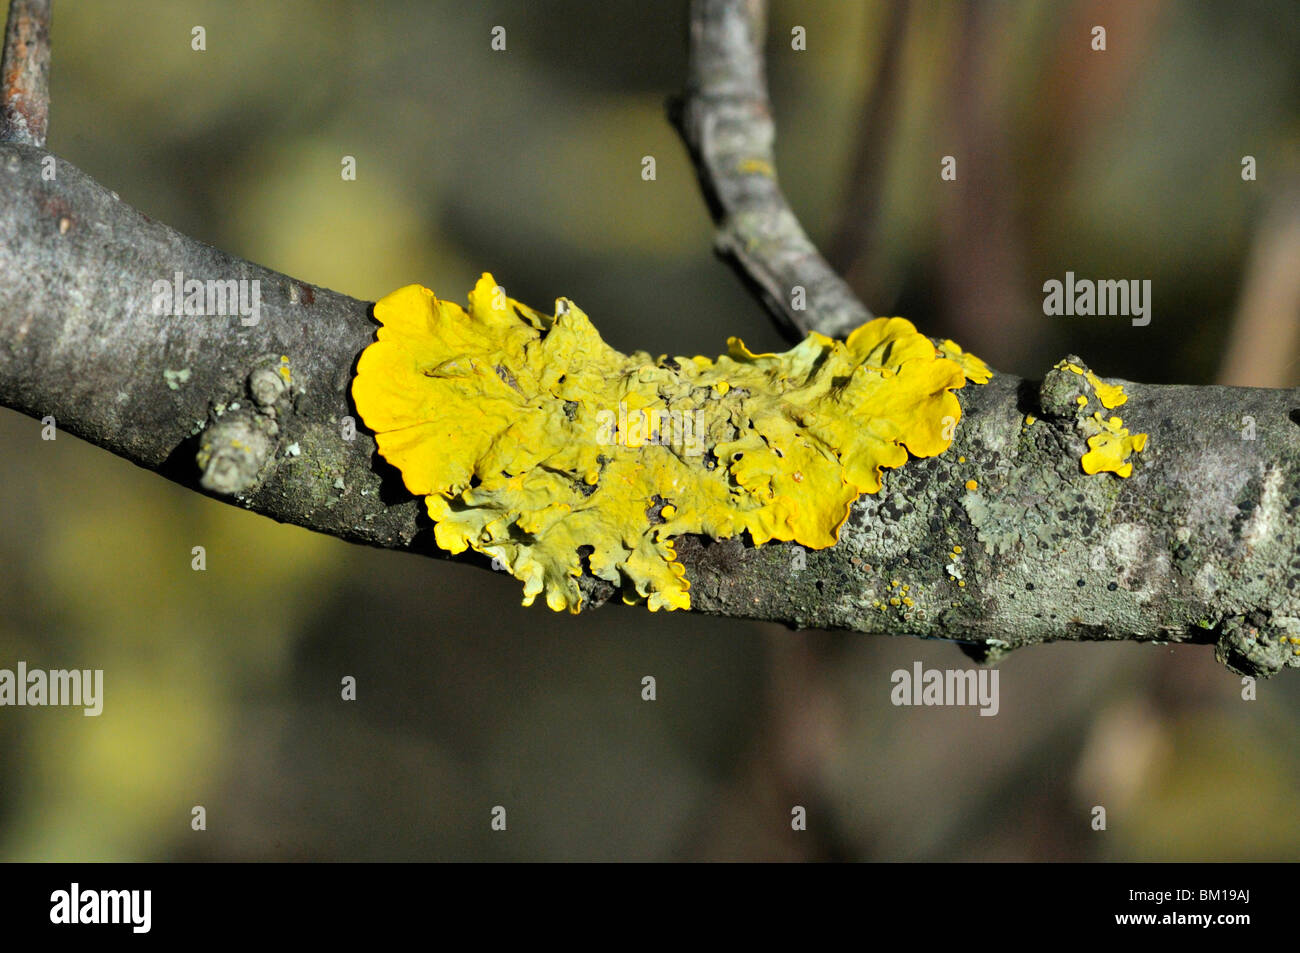 Lichen on branch Stock Photo